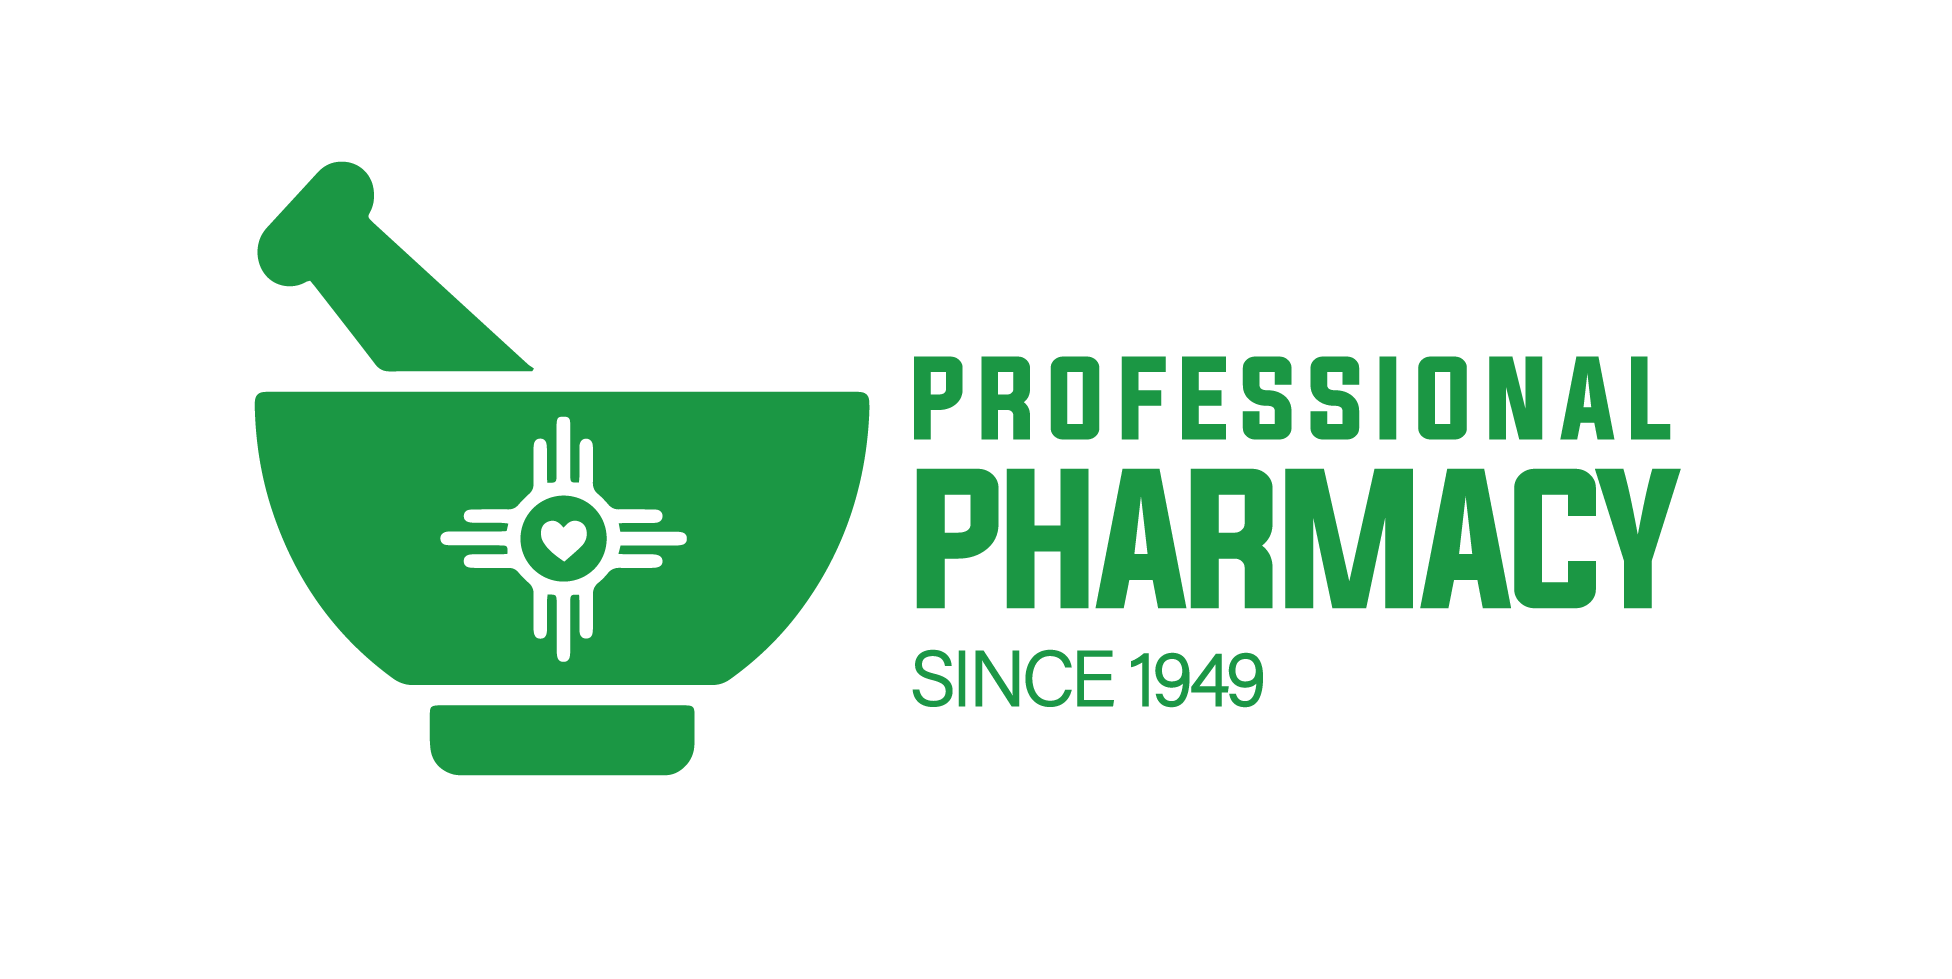 Professional Pharmacy, Wichita KS